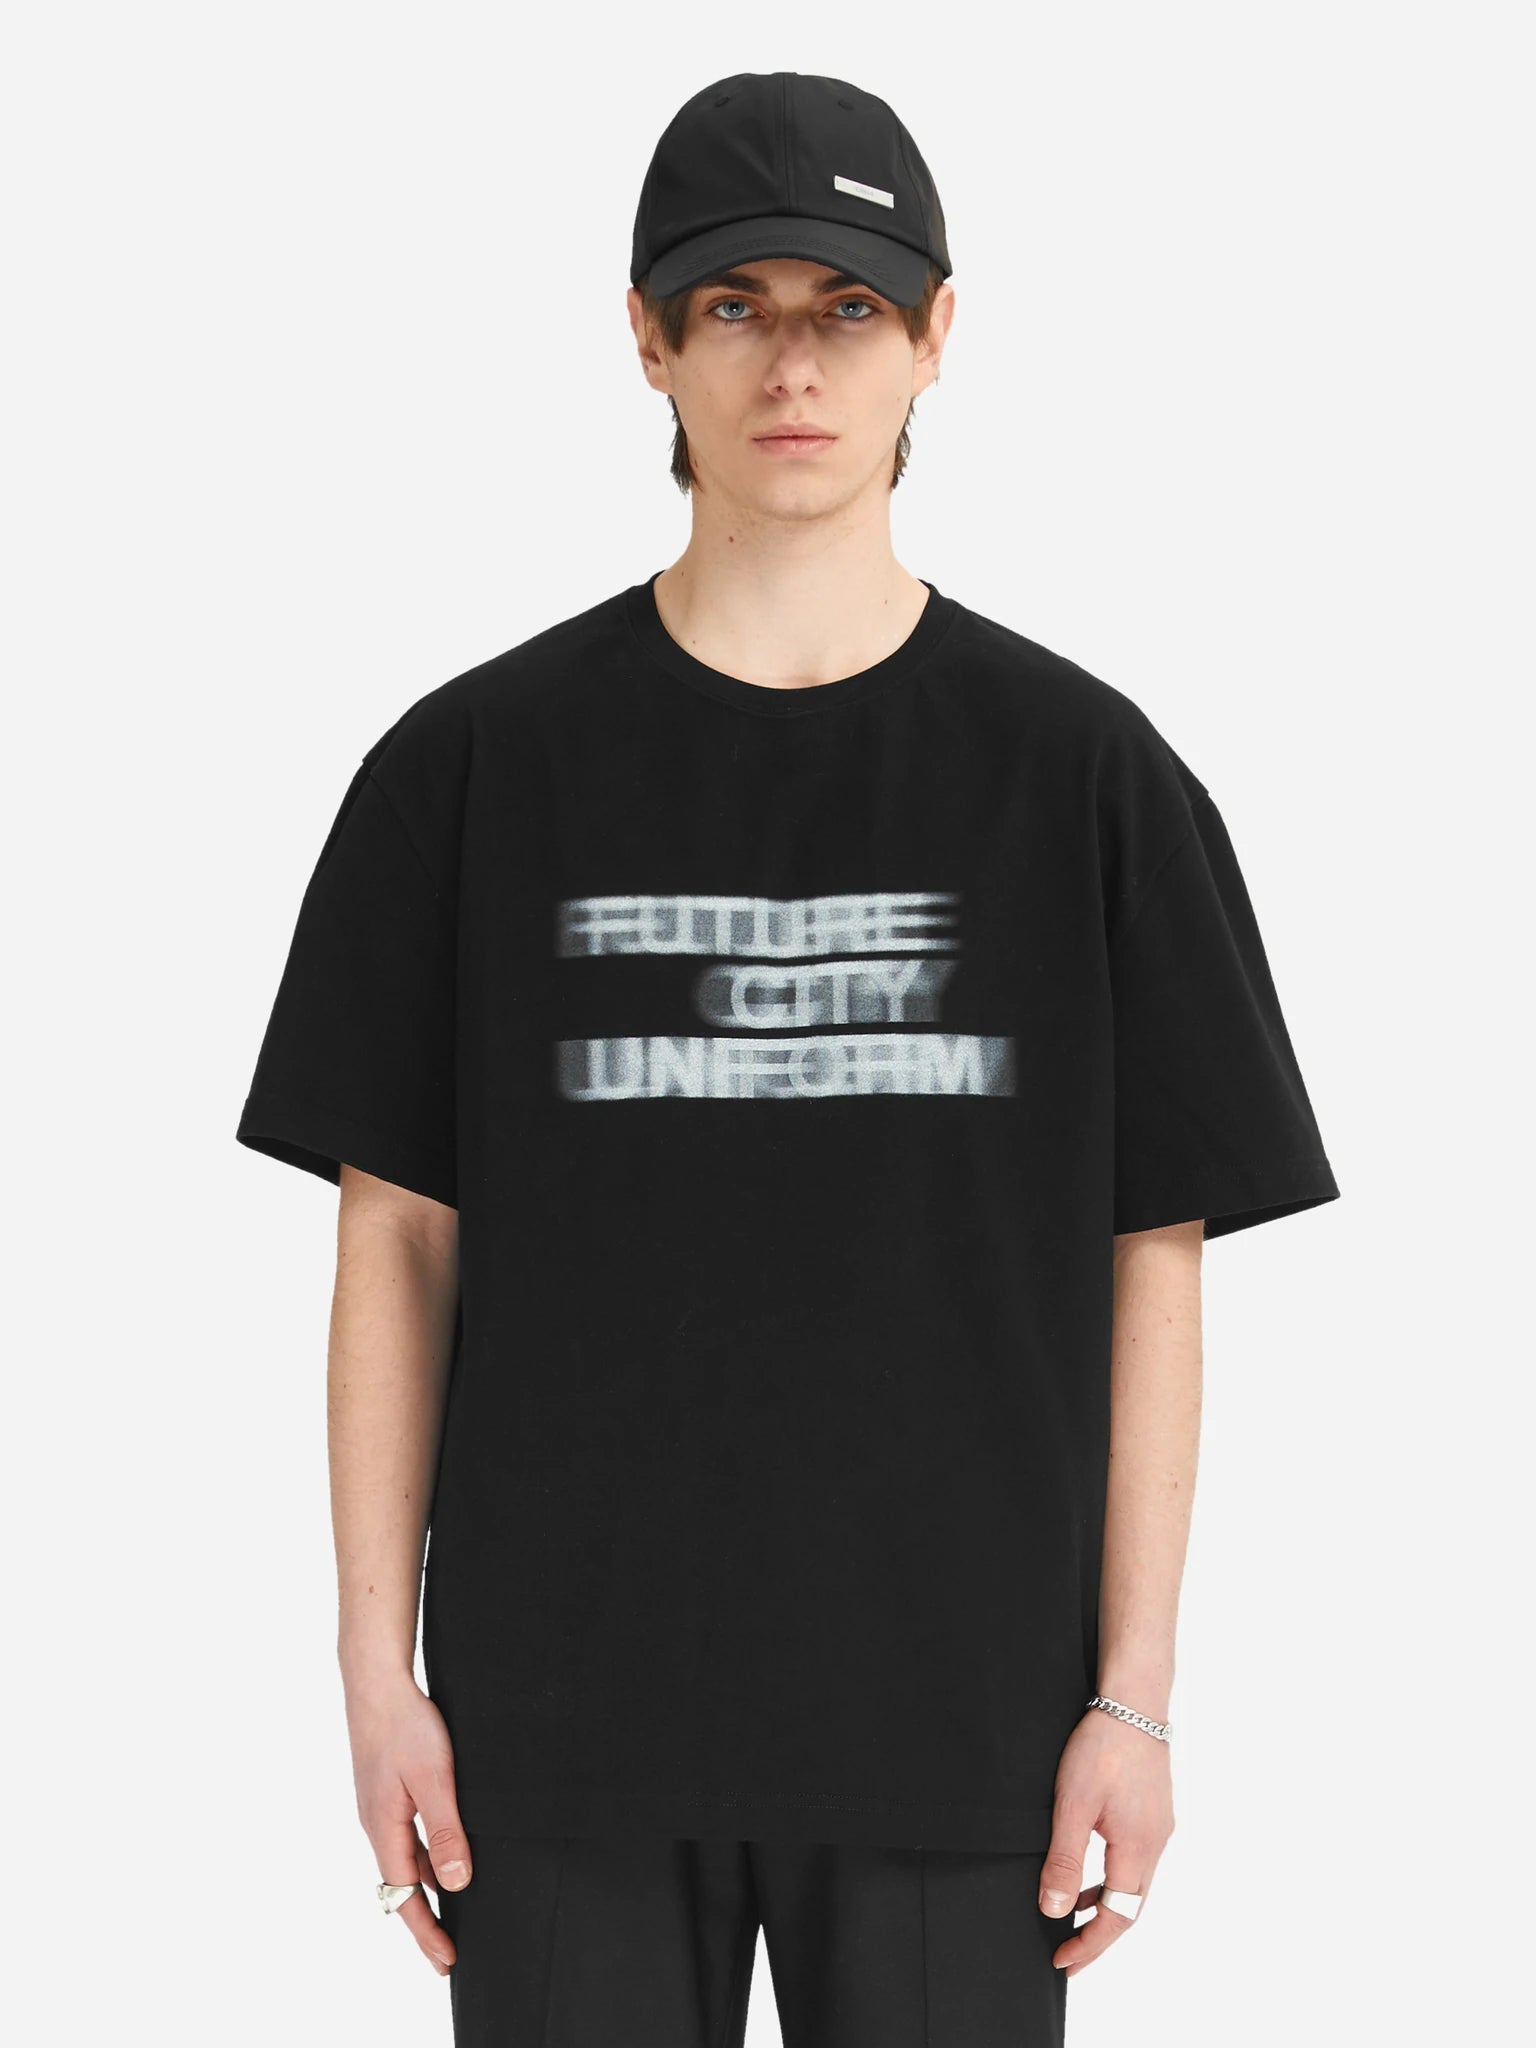 Future City Uniform T-Shirt - Black | ONLINE ONLY